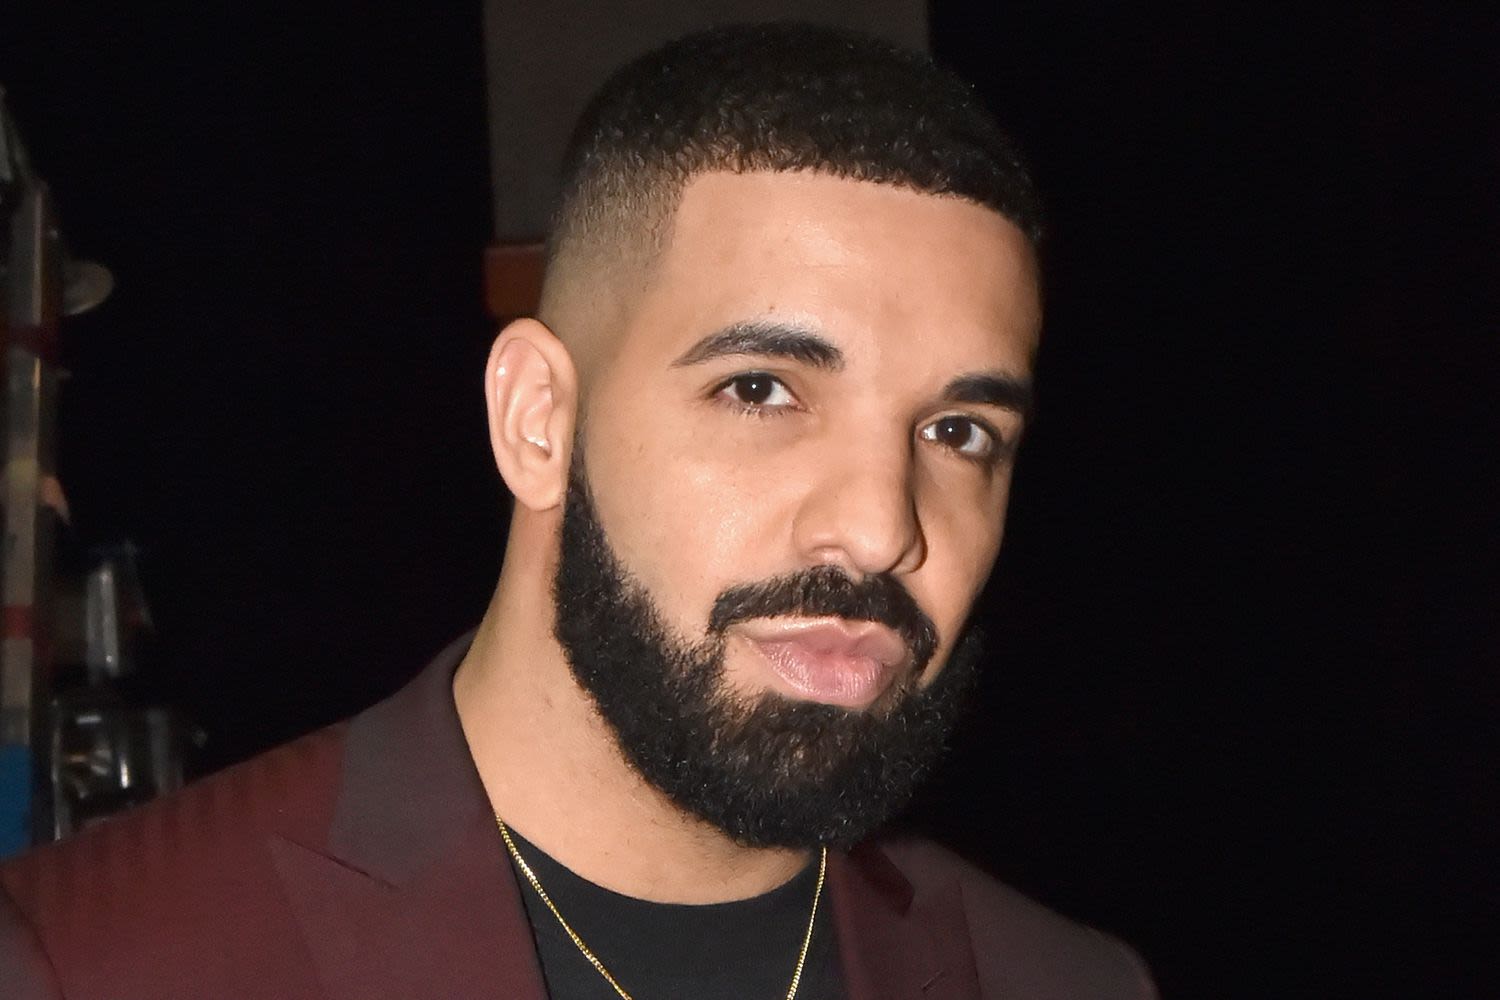 Shooting near Drake’s Toronto mansion leaves one man injured